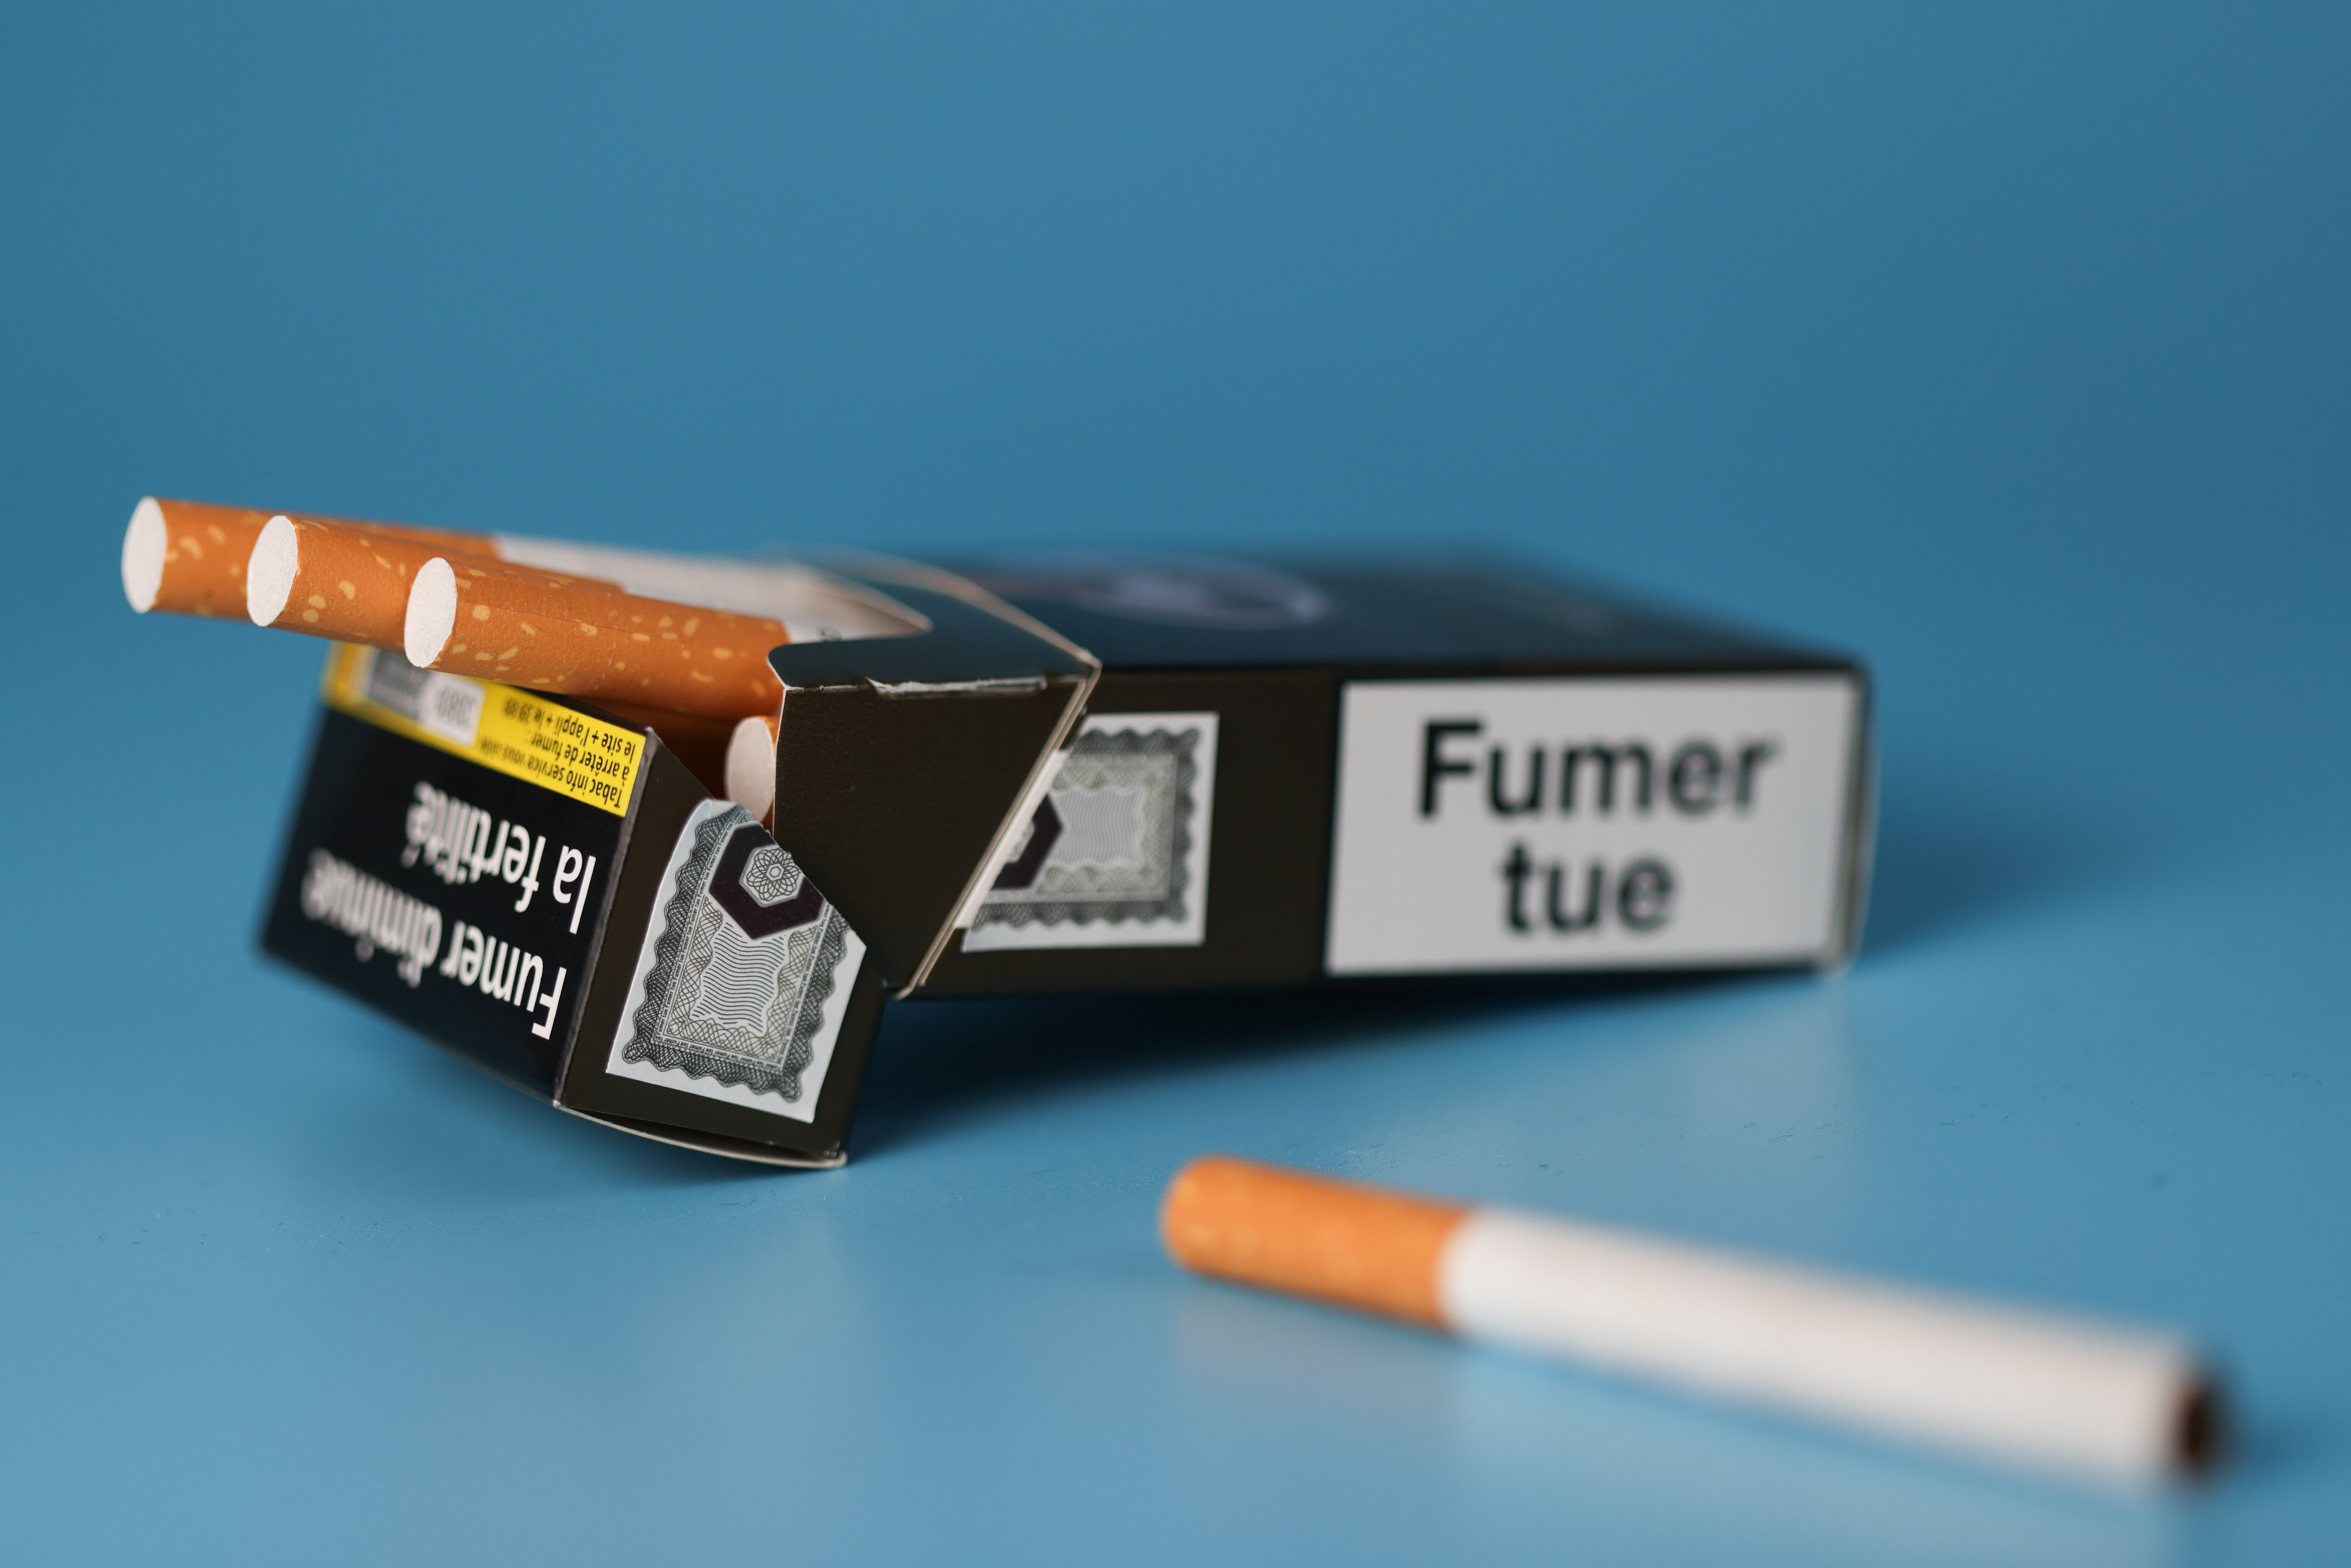 Quatre fumeurs sur cinq achètent leurs cigarettes chez le buraliste en France. LE PARISIEN / ARNAUD JOURNOIS